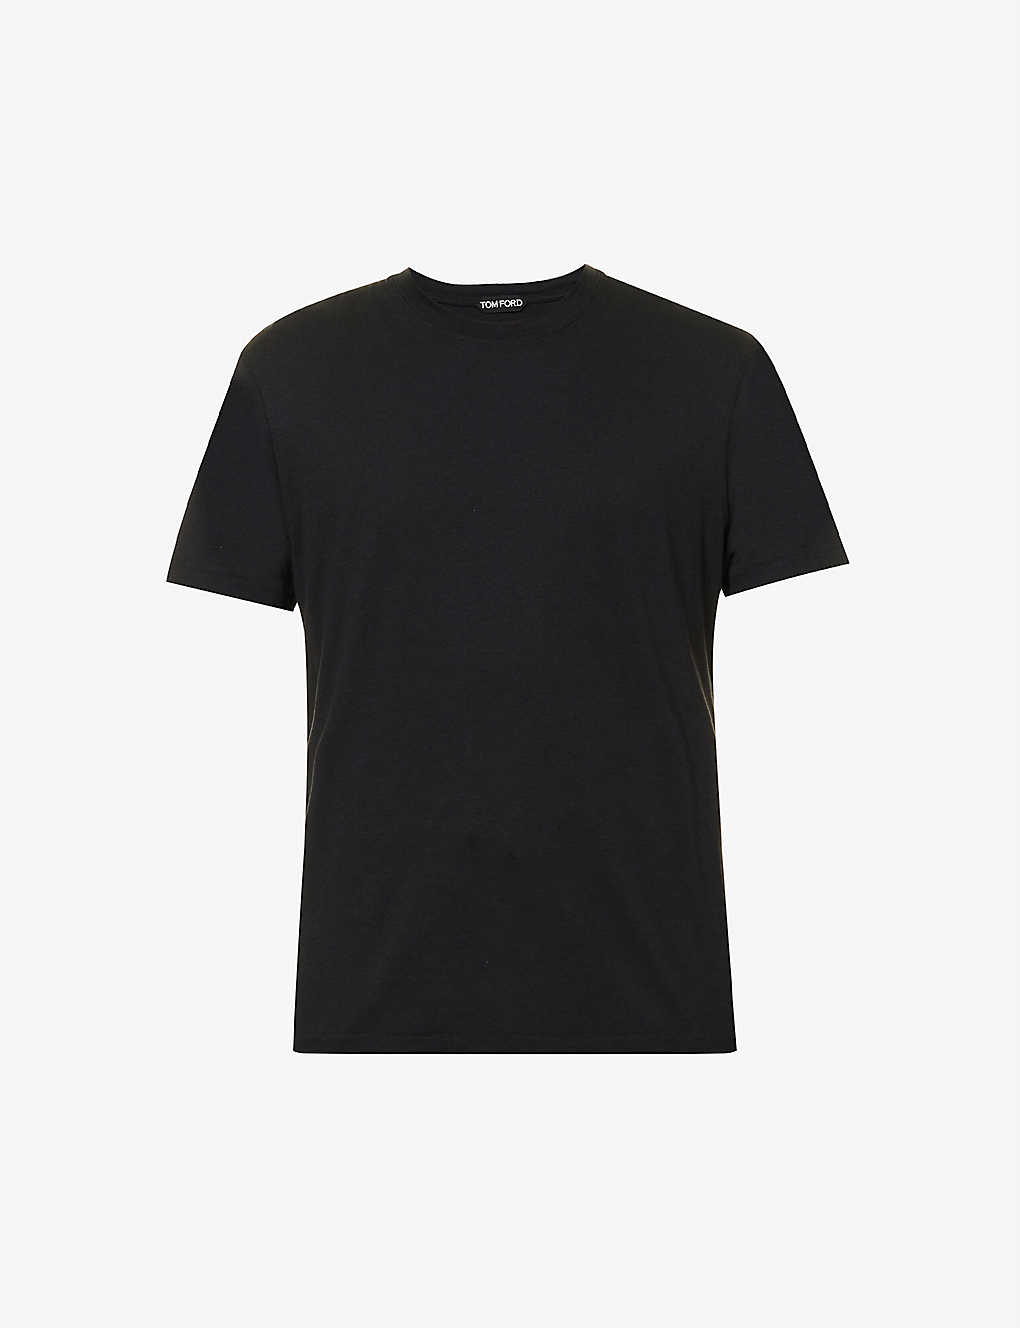 Shop Tom Ford Men's Black Brand-embroidered Crewneck Cotton-blend T-shirt